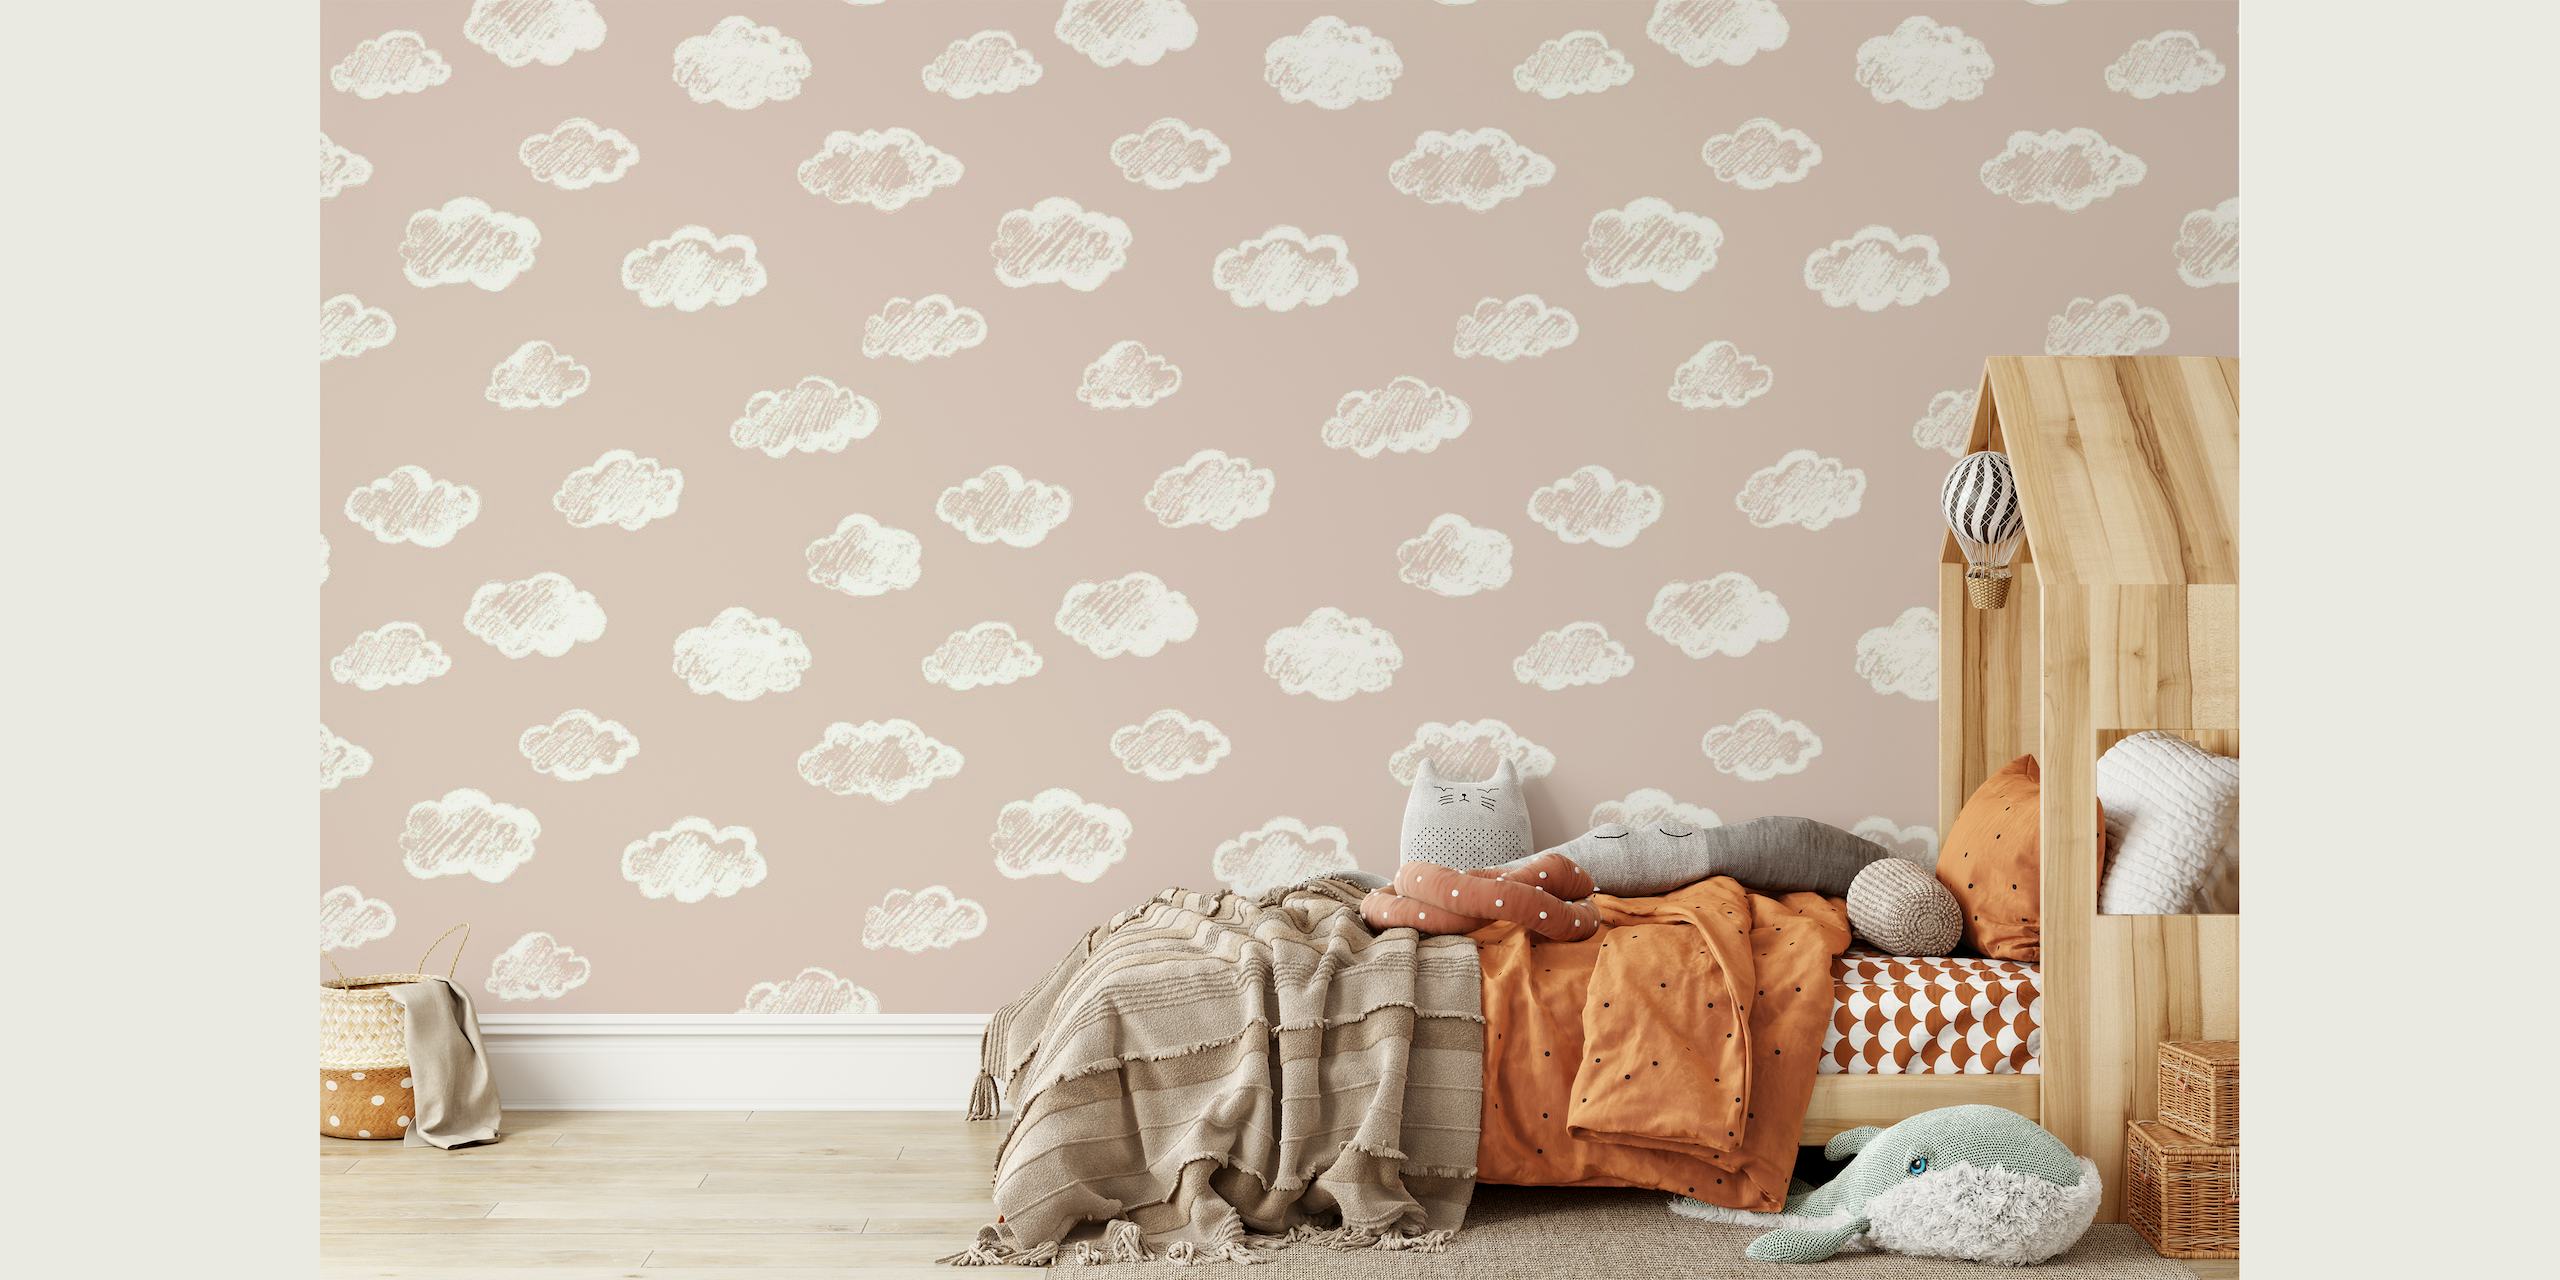 Papier peint mural sticker de nuages blancs doux sur fond rose blush